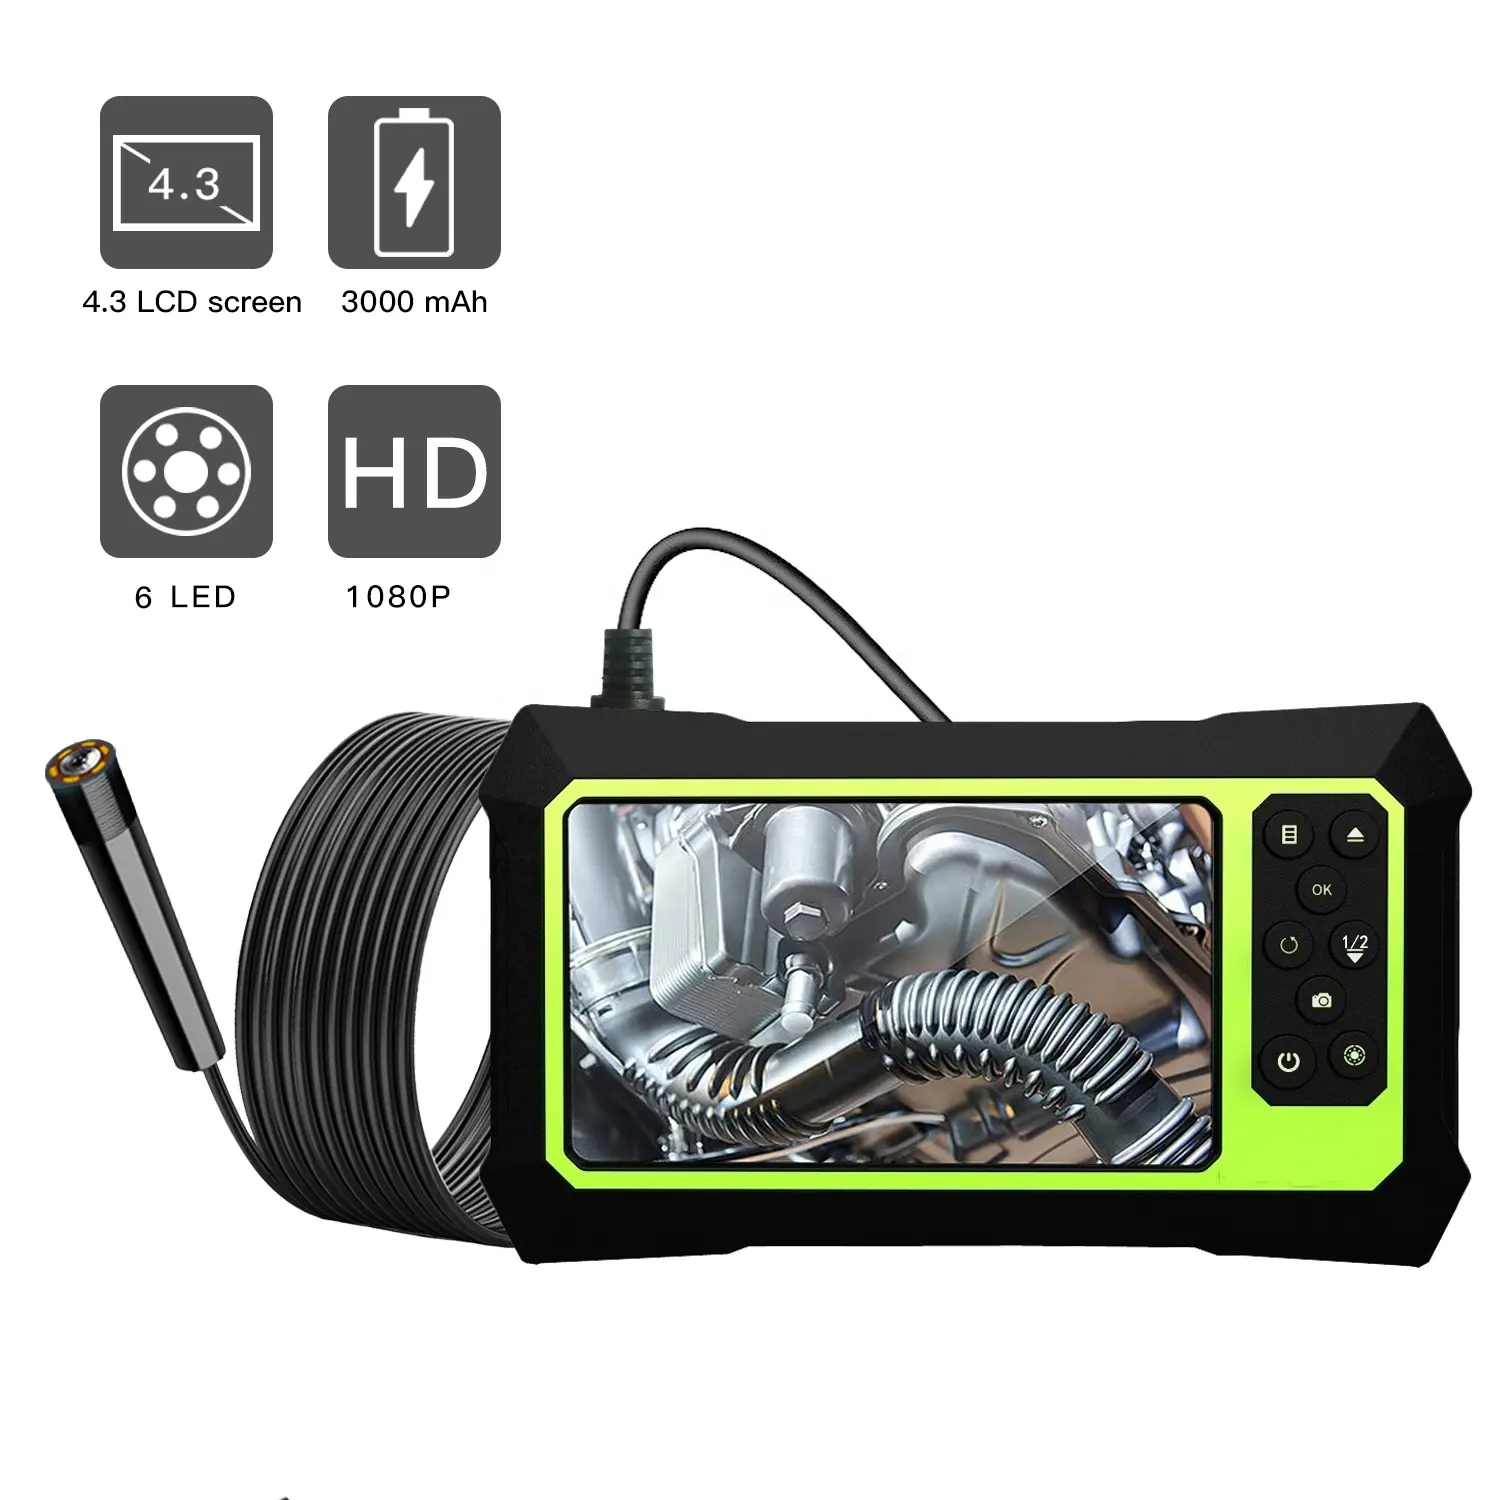 كاميرا بشاشة LCD 4.3 بوصة كاميرا منظار محمولة باليد أدوات فحص 1080P لميكانيكيين السيارات